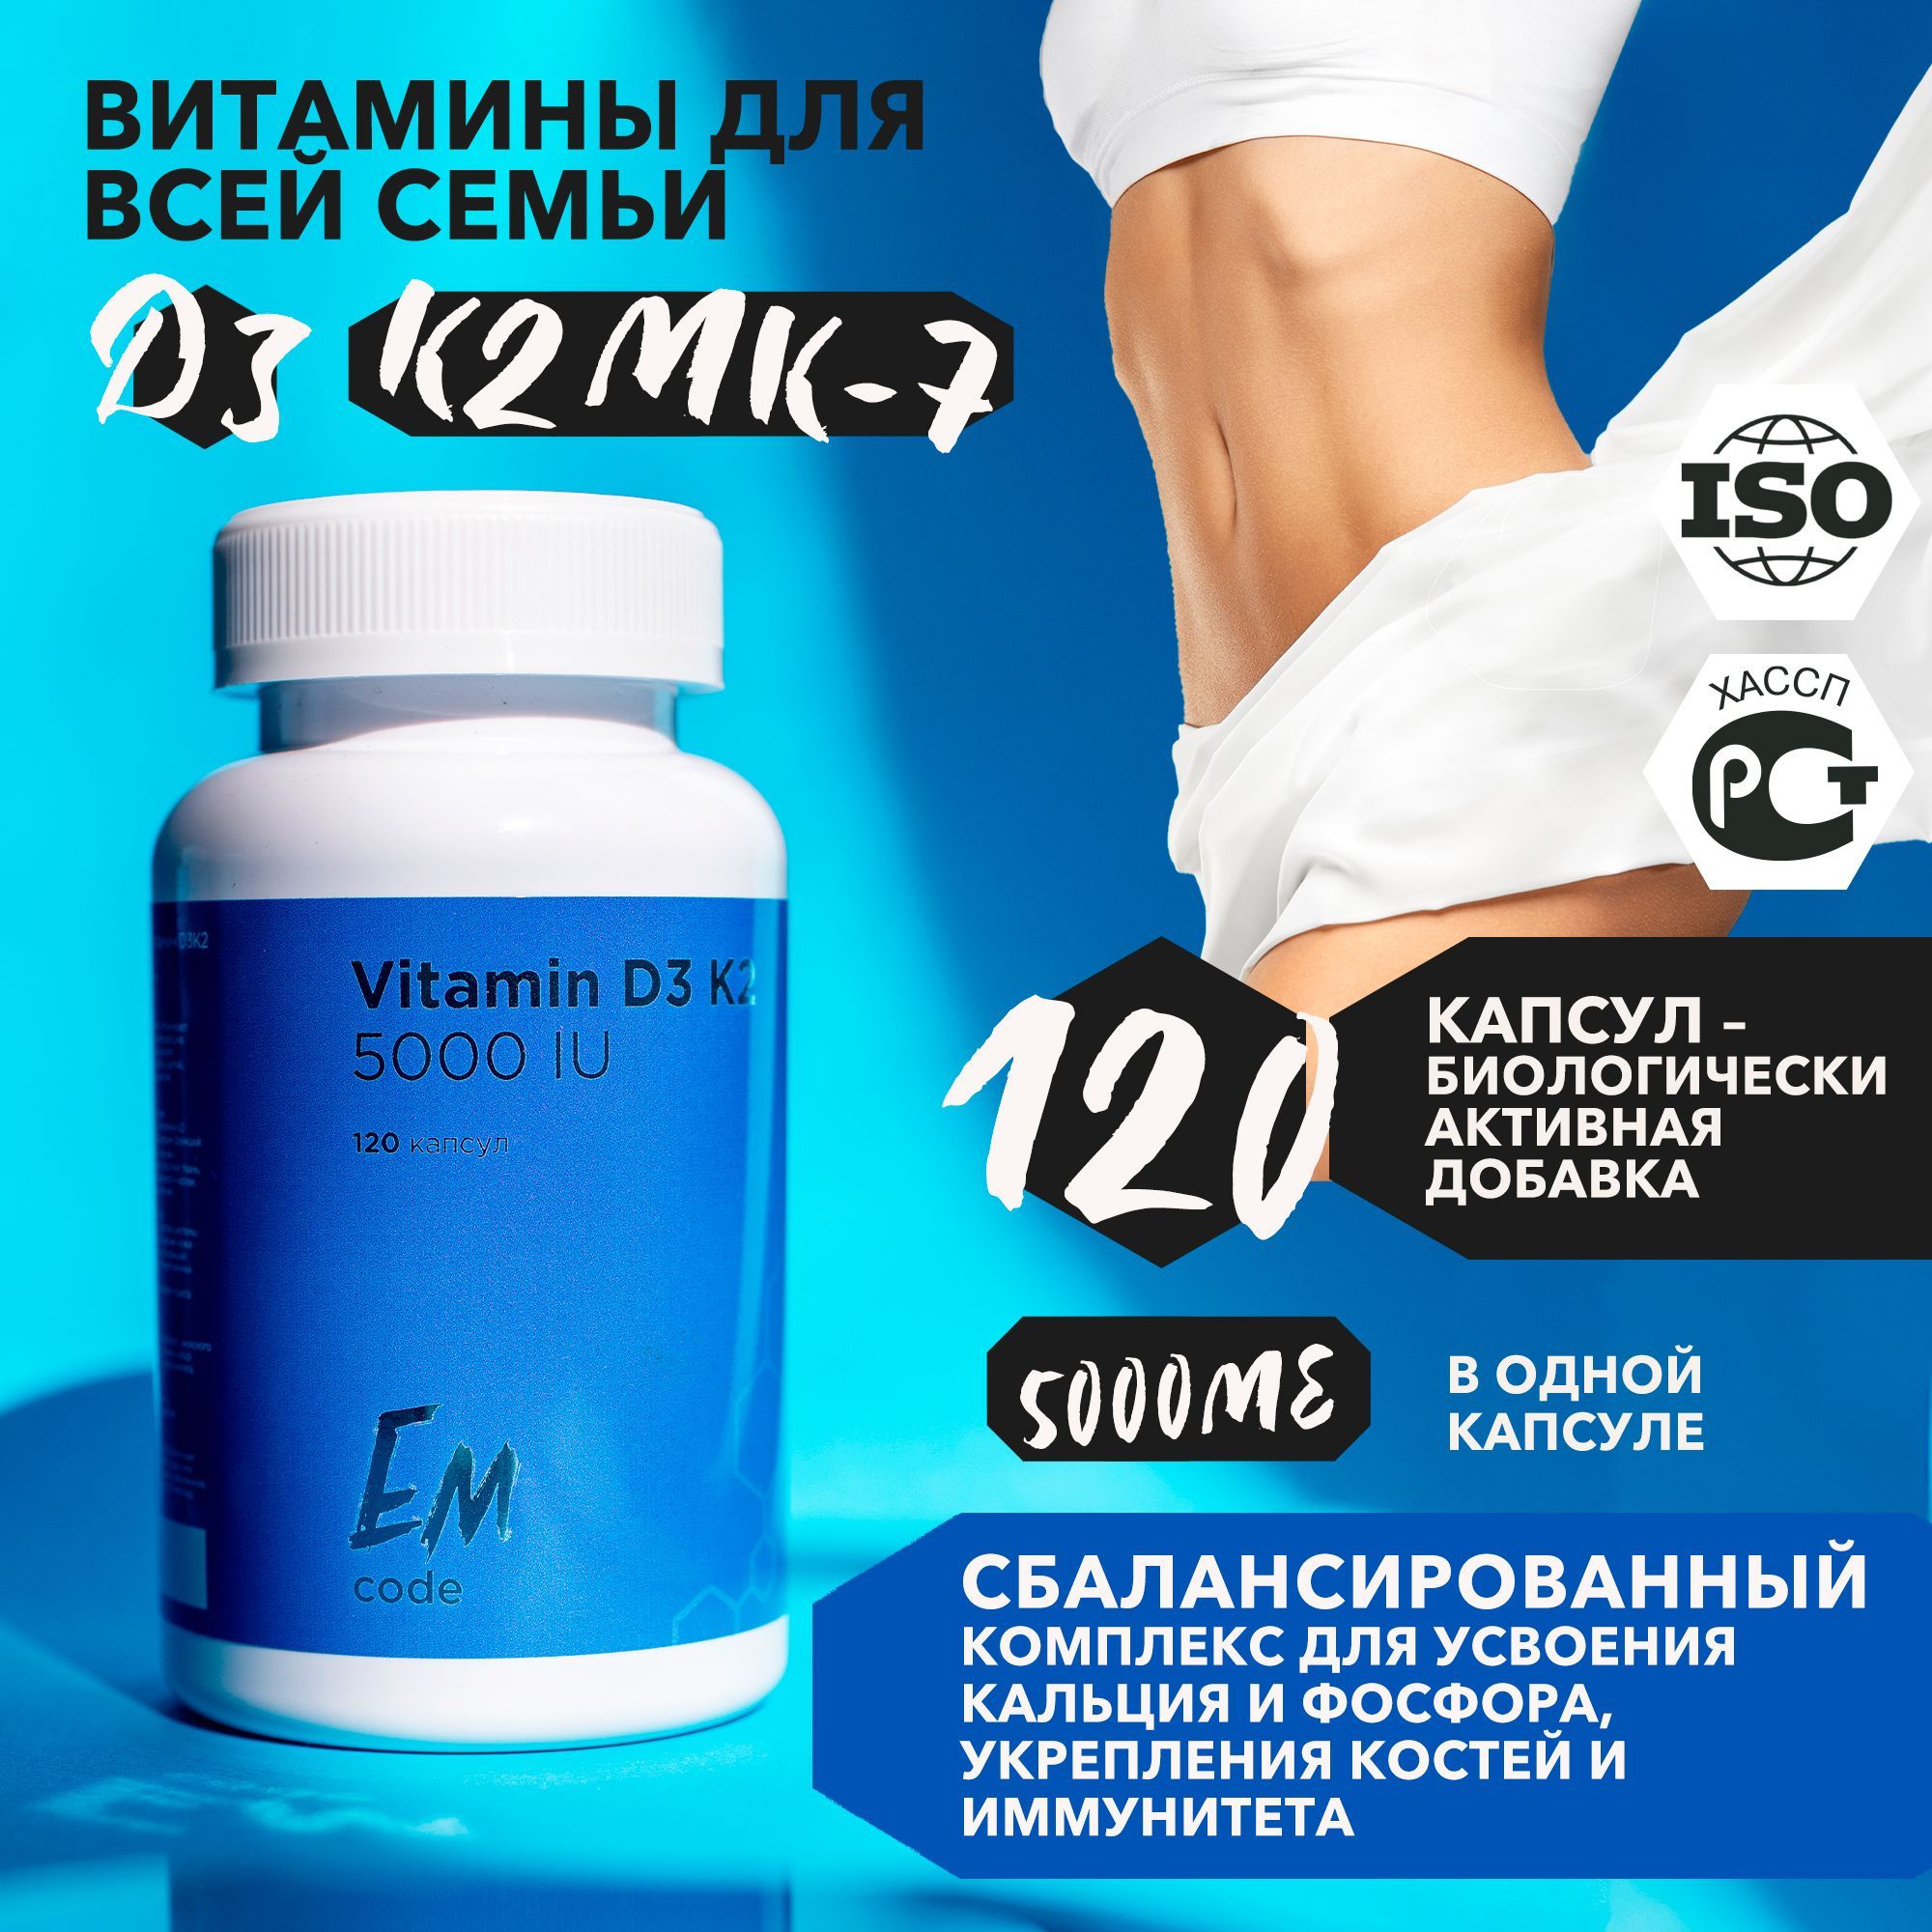 Витамины для мужчин 40 отзывы. Витамины для мужского здоровья. Витамины для мужчин в капсулах. Витамины для мужчин комплекс самые эффективные. Алтайские комплексы витаминов для мужчин и женщин.